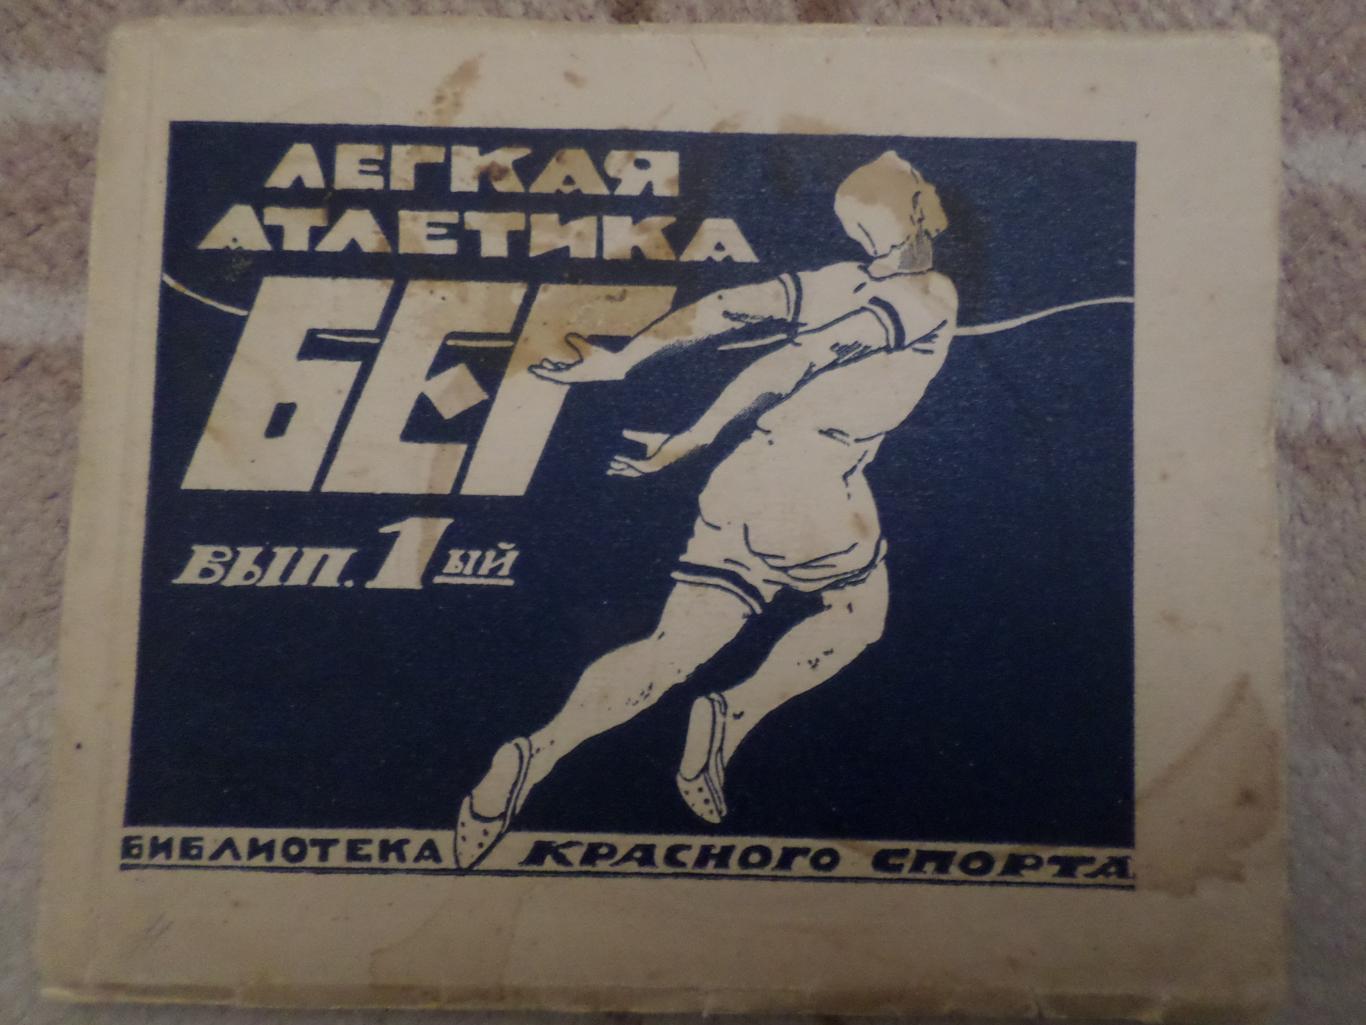 Легкая атлетика, Бег вып. 1, 1924 г библиотека Красного спорта